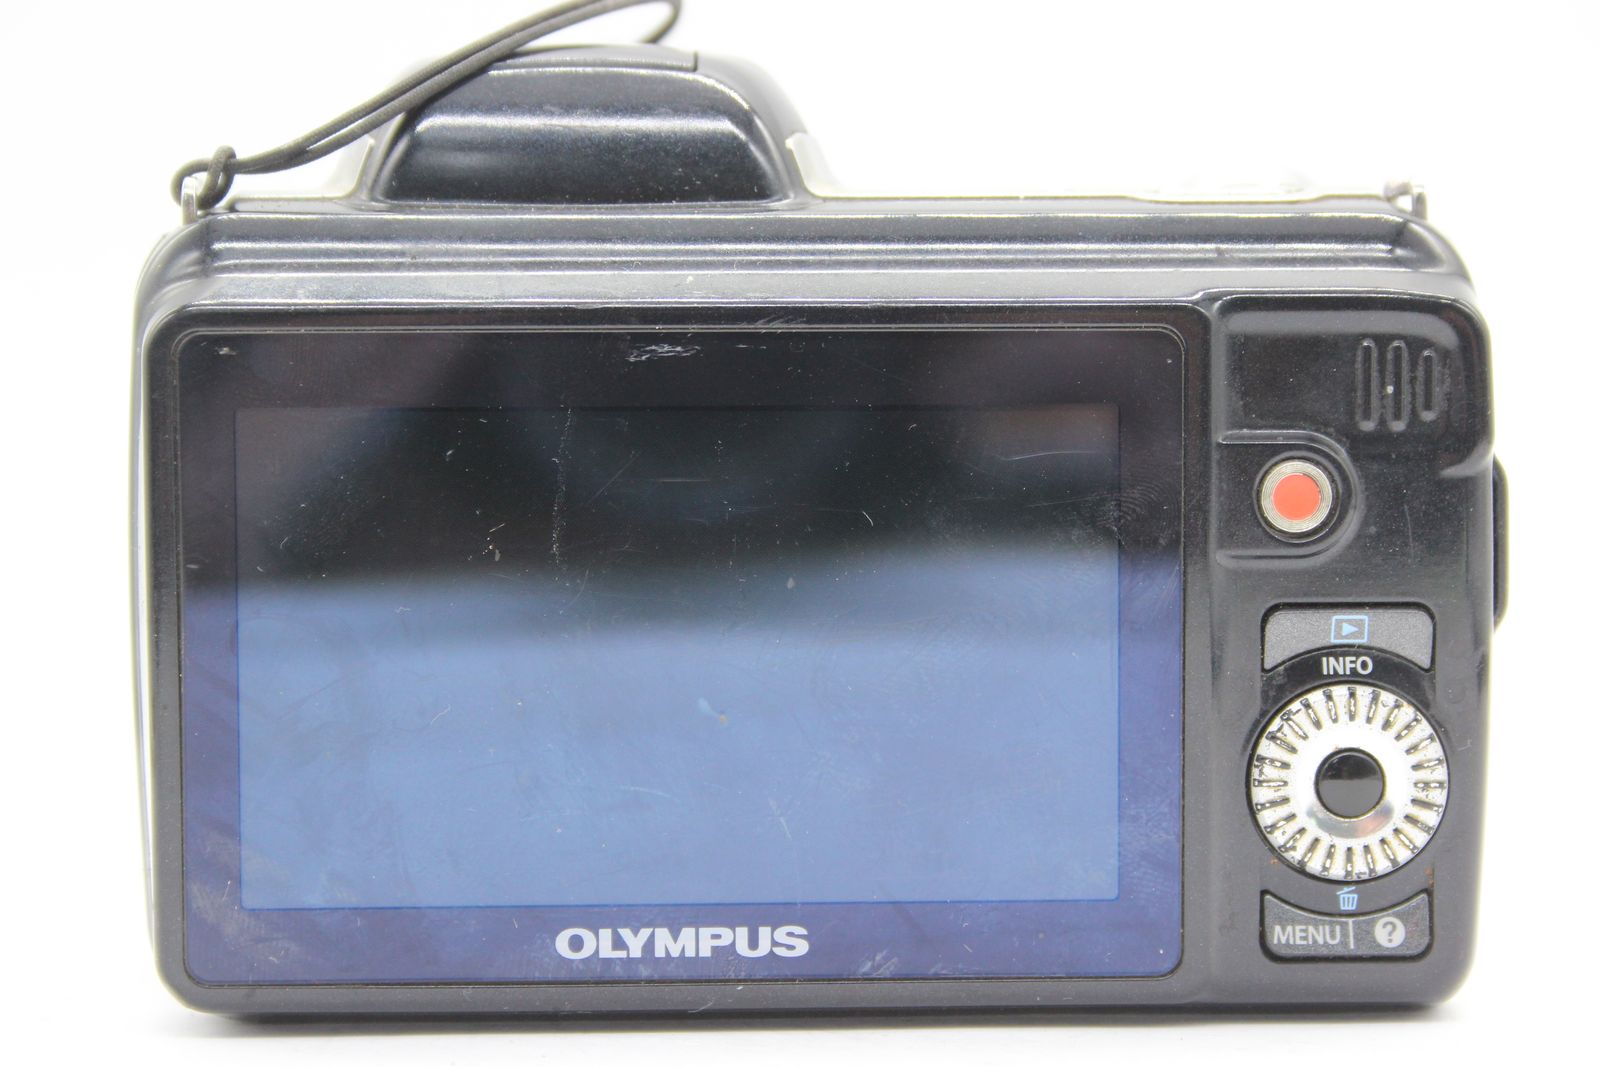 【返品保証】 オリンパス Olympus SP-810UZ 36x Wide バッテリー付き コンパクトデジタルカメラ s5617